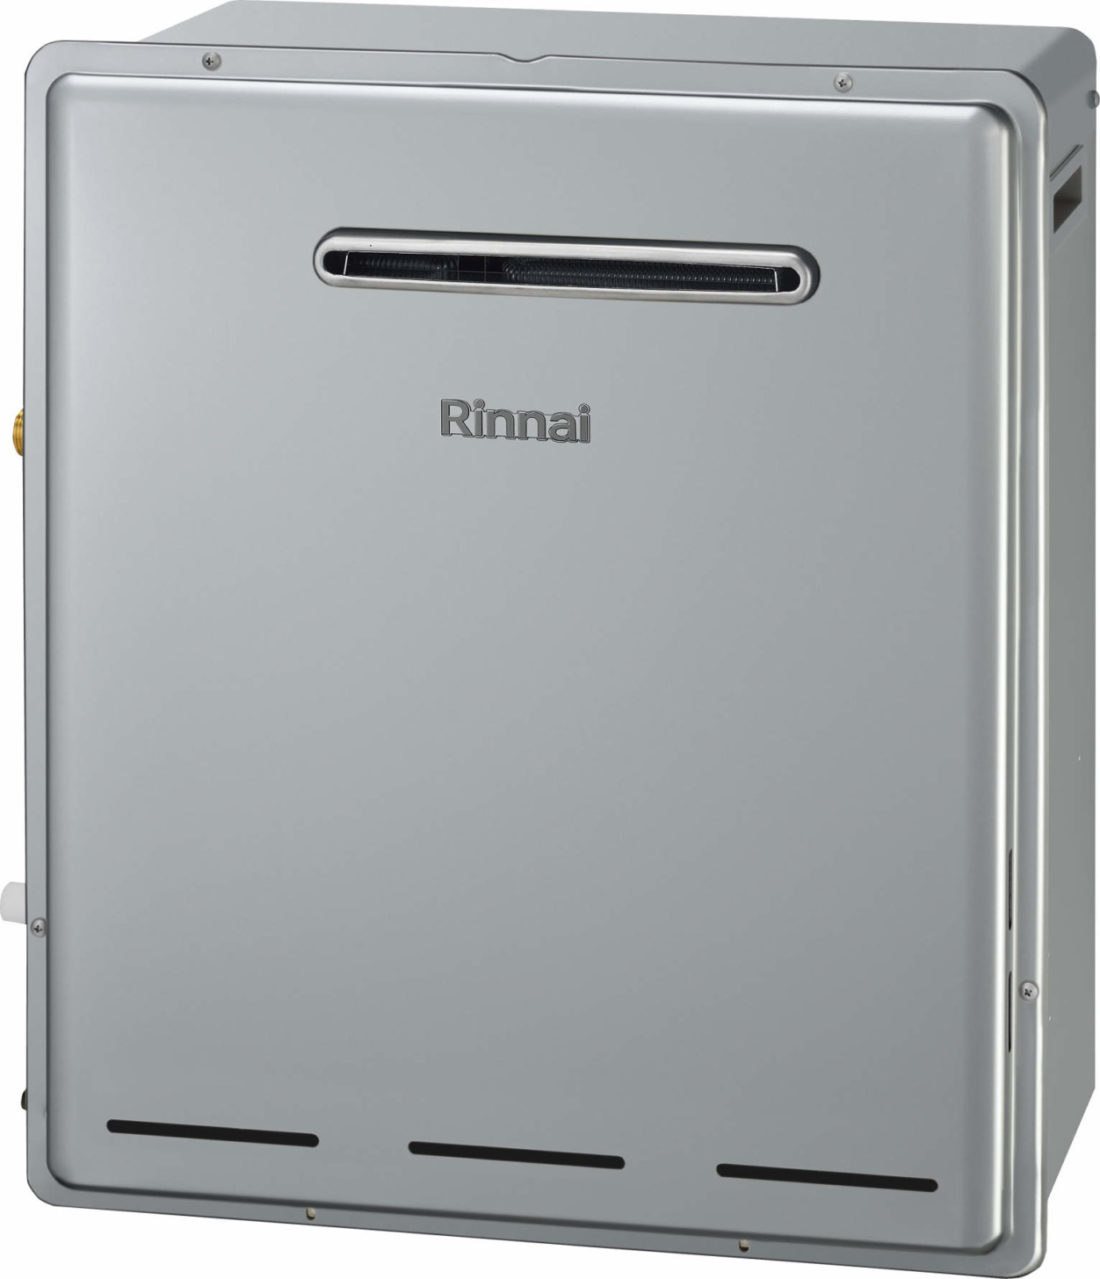 リンナイ ガス給湯暖房用熱源機 RUFH-EPシリーズ フルオート 屋外壁掛型 24号 都市ガス RINNAI - 4